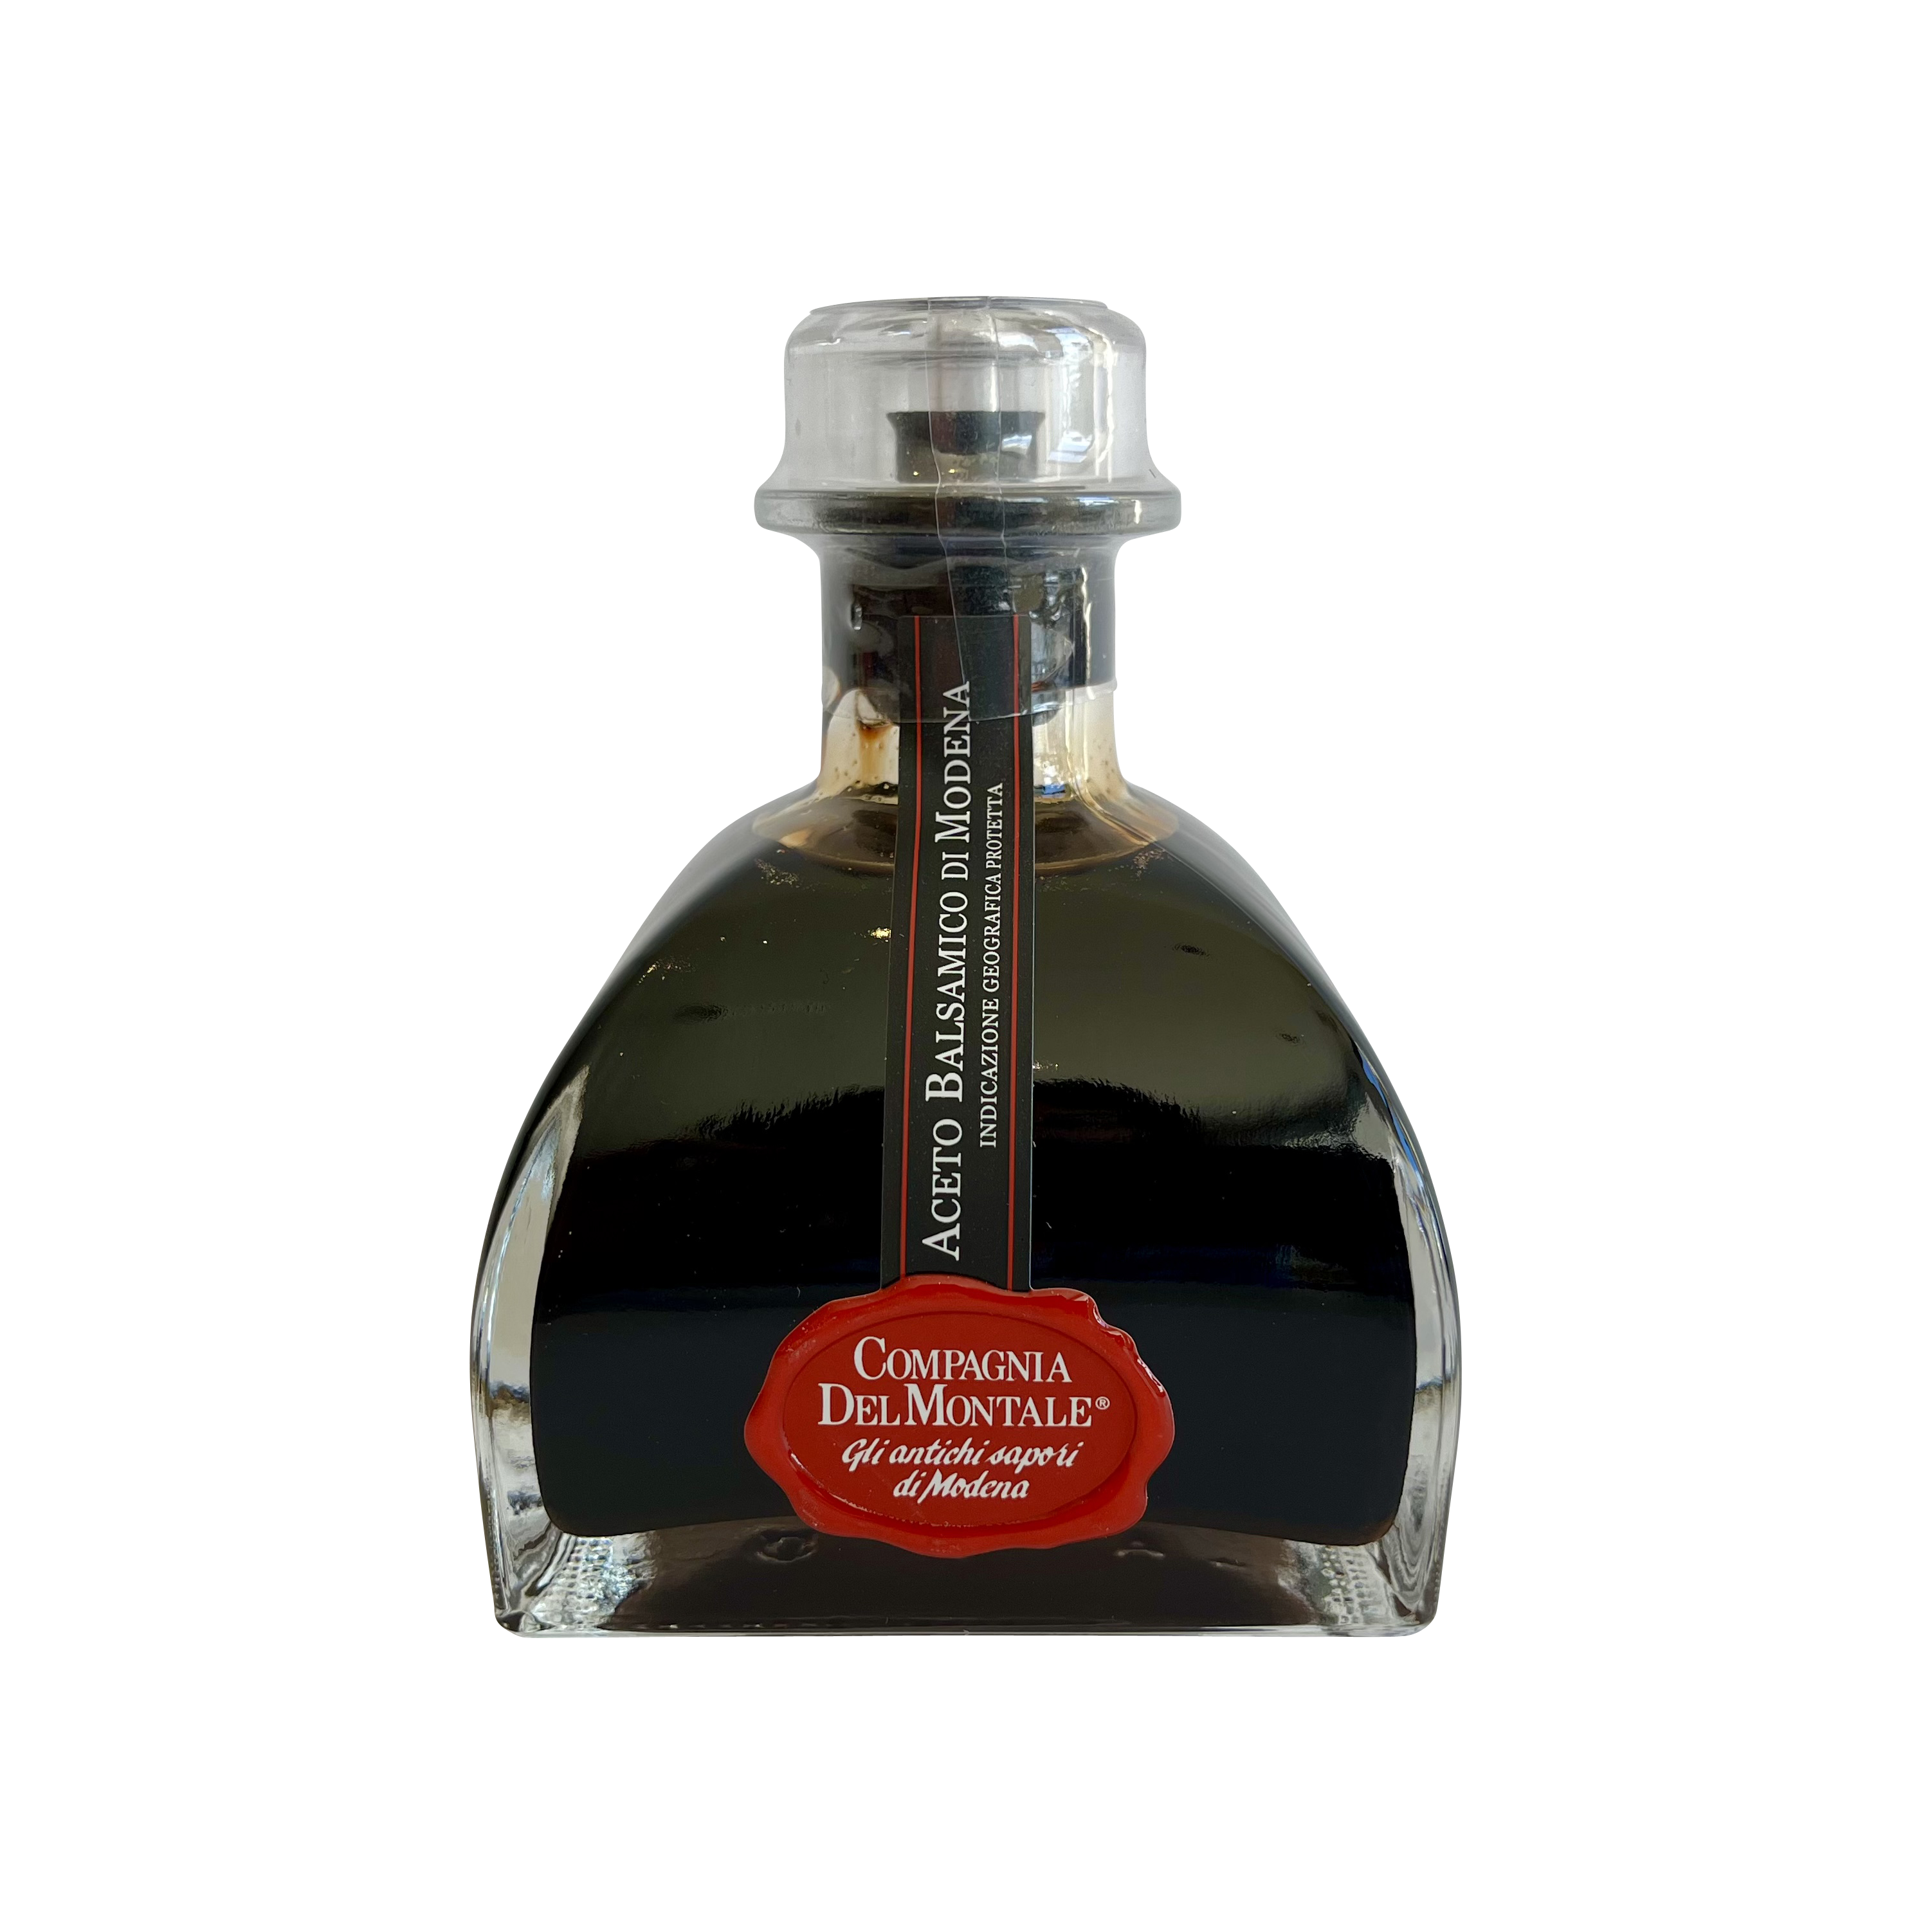 Compagnia del Montale Anniversary Special Balsamic Vinegar